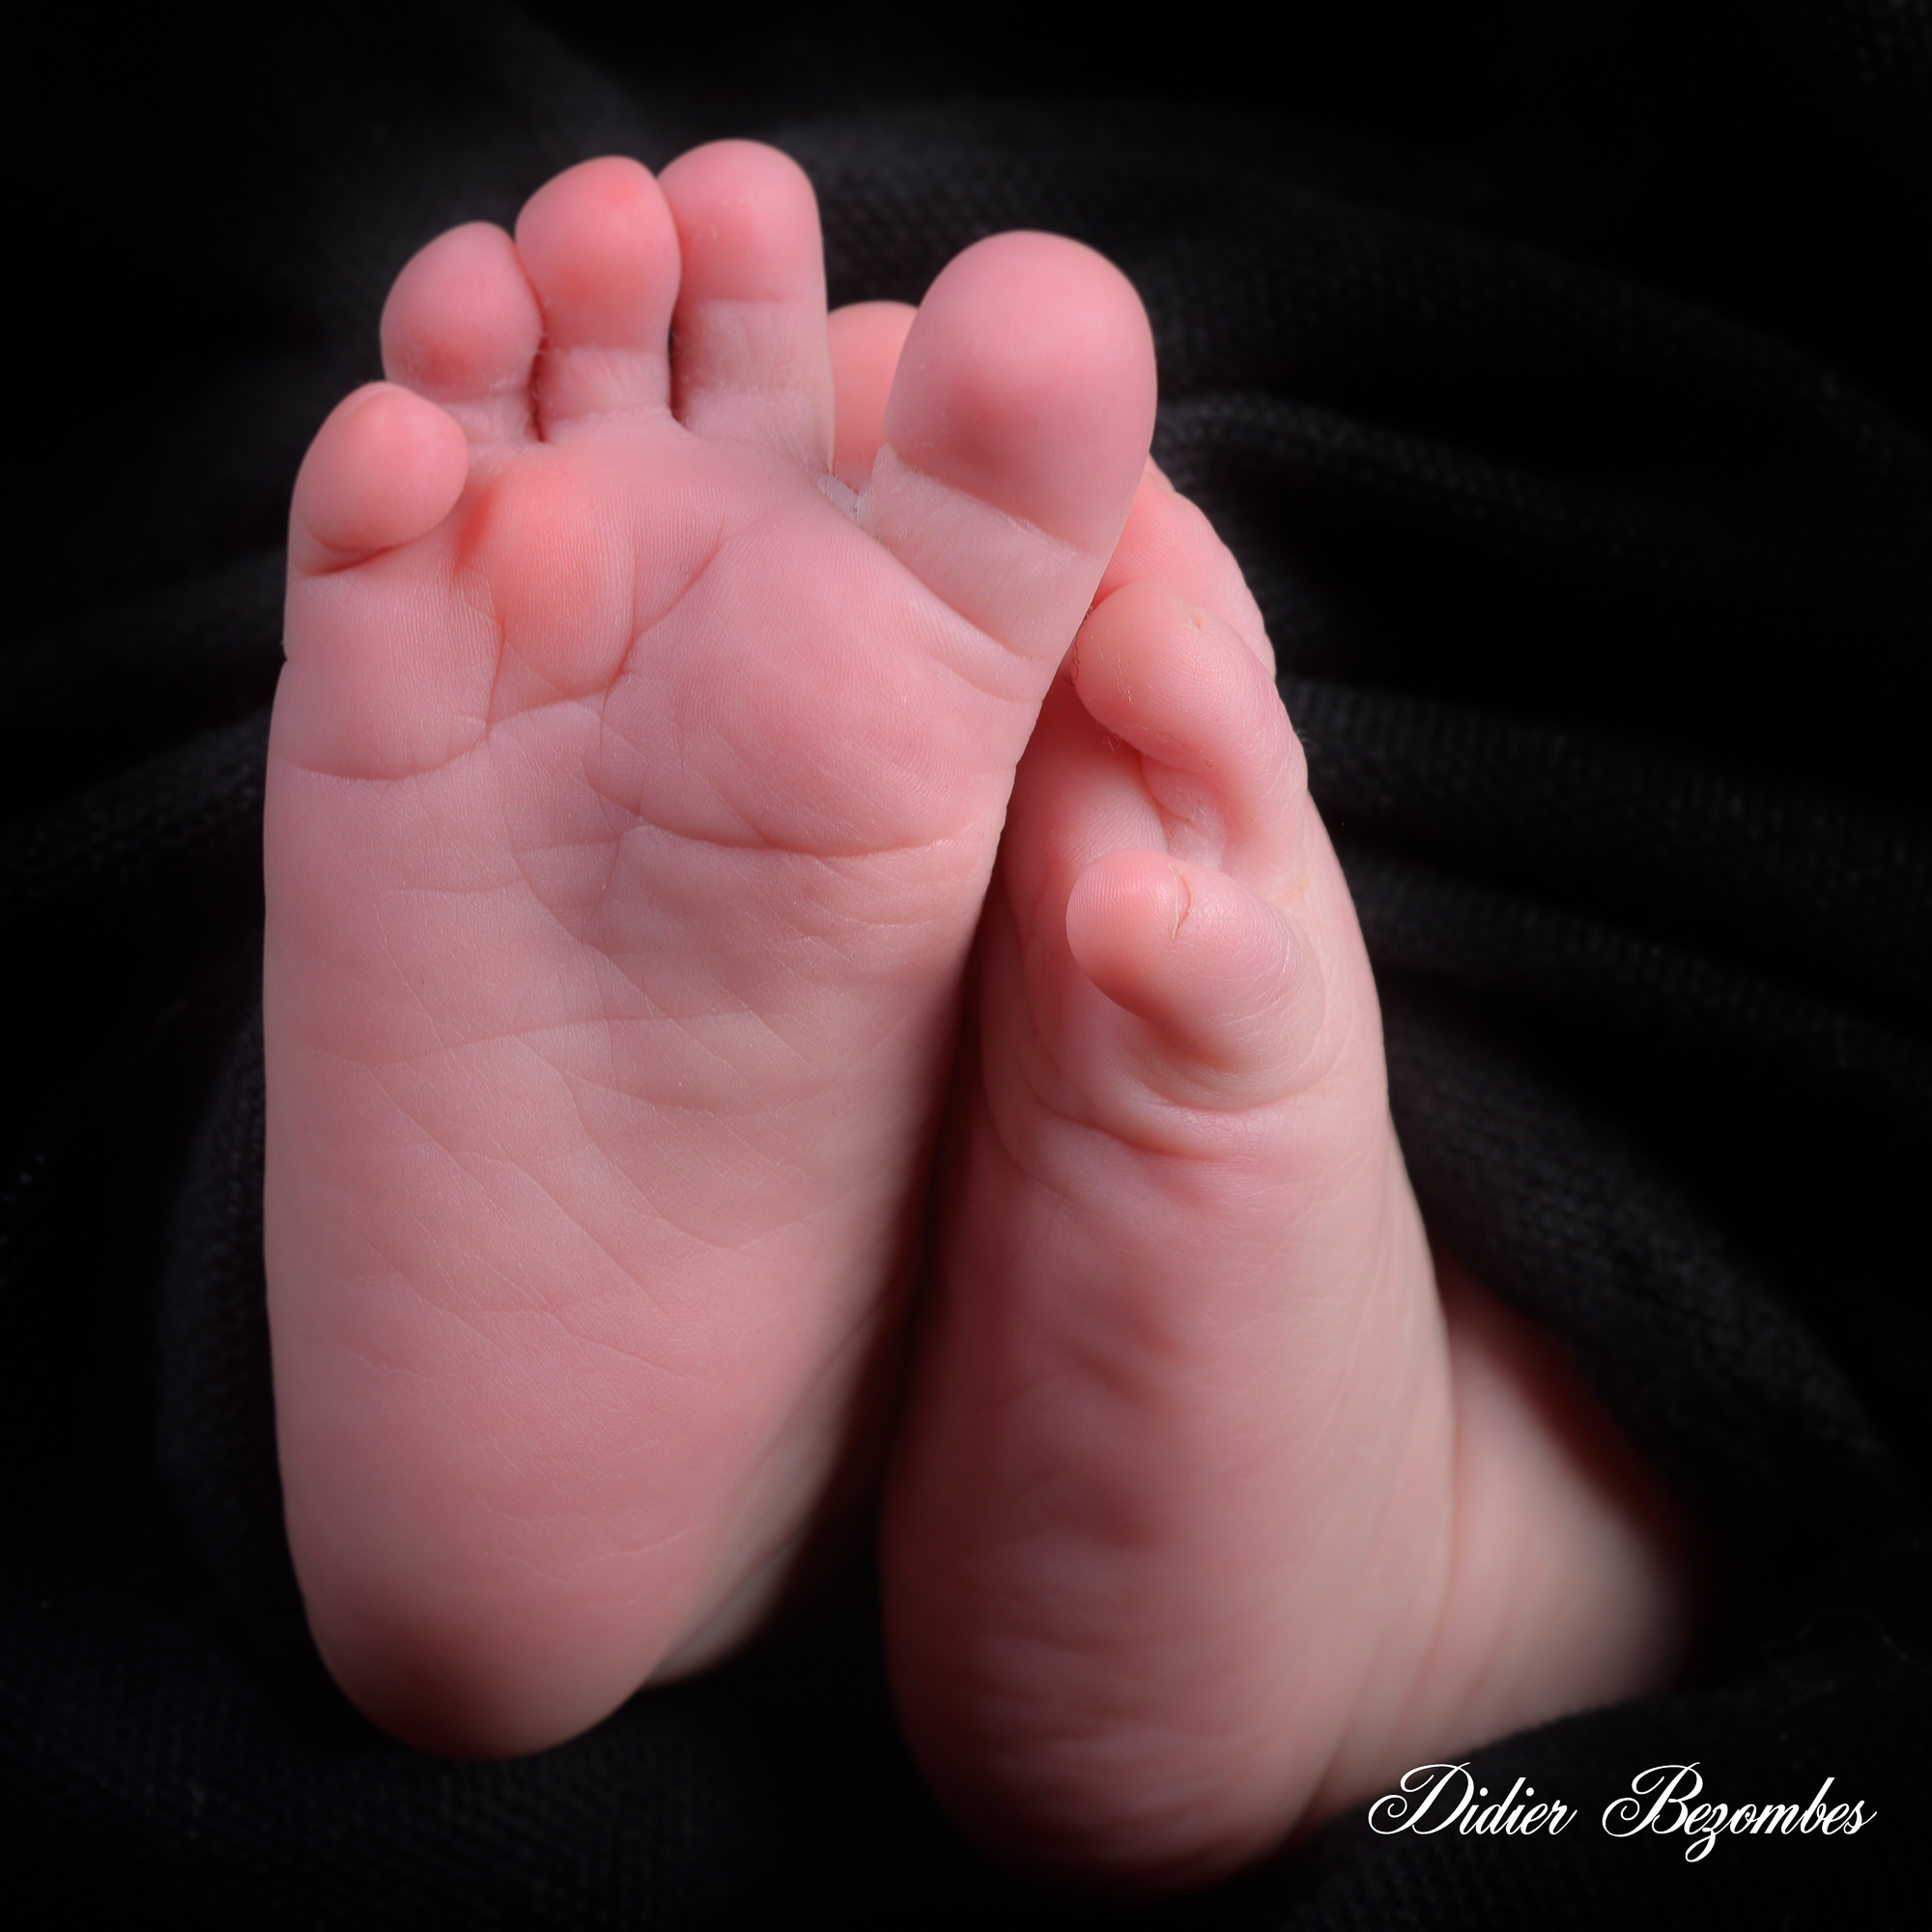 photo-des-pieds-de-bébé-photos-studio-original-en-couleur-sur-fond-noir-photographe-Didier-Bezombes